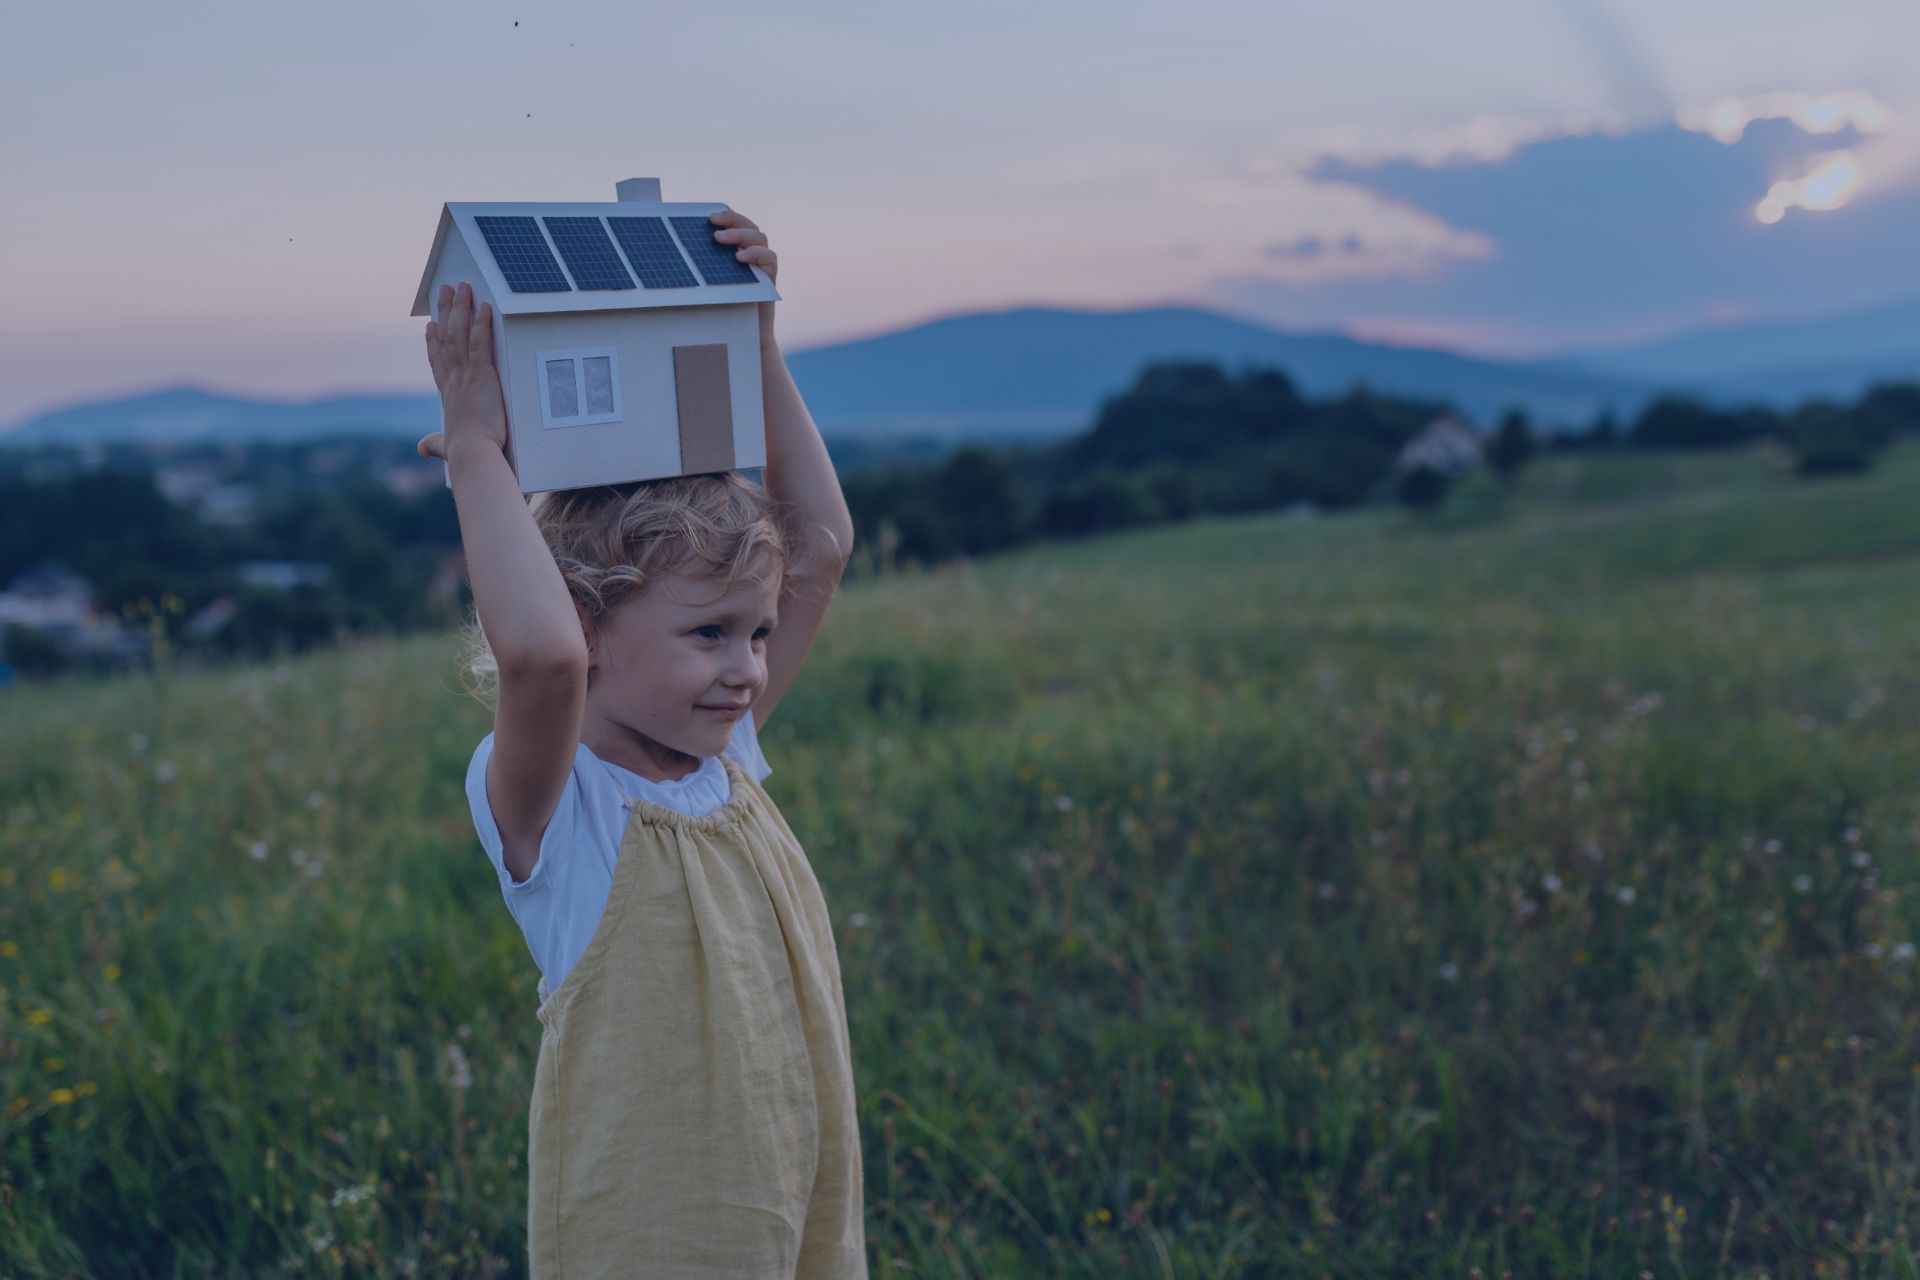 Bambina con casetta e impianto fotovoltaico